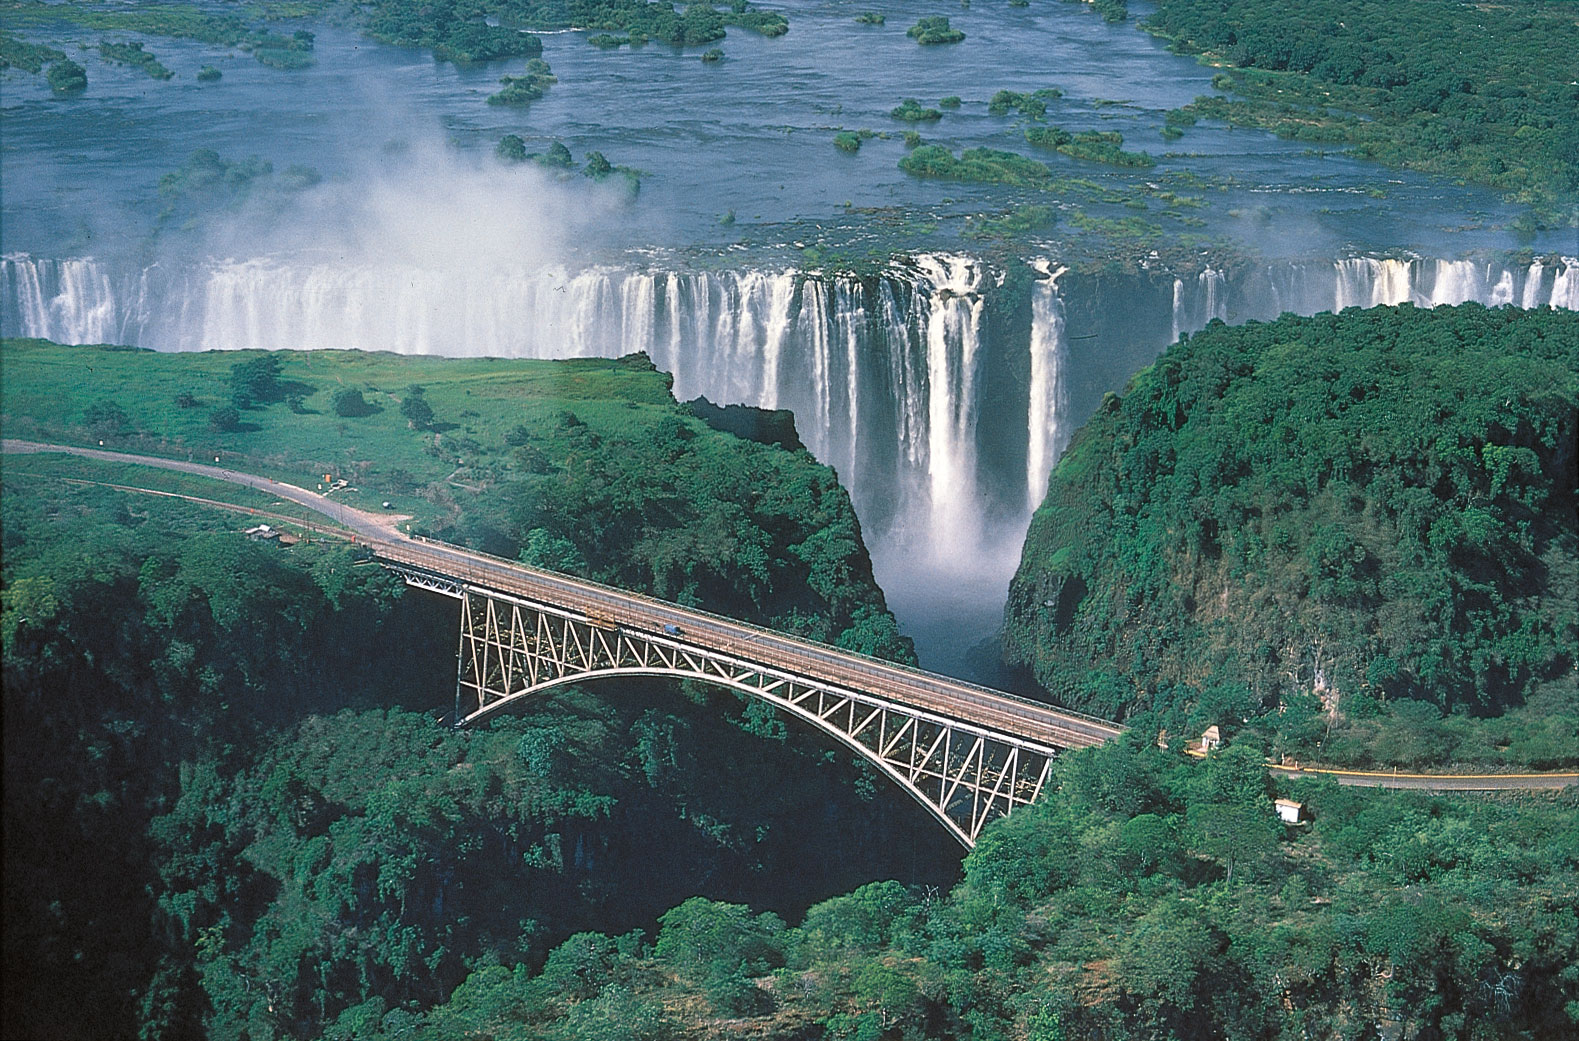 The stunning Victoria Falls Bridge linking Zambia to Zimbabwe